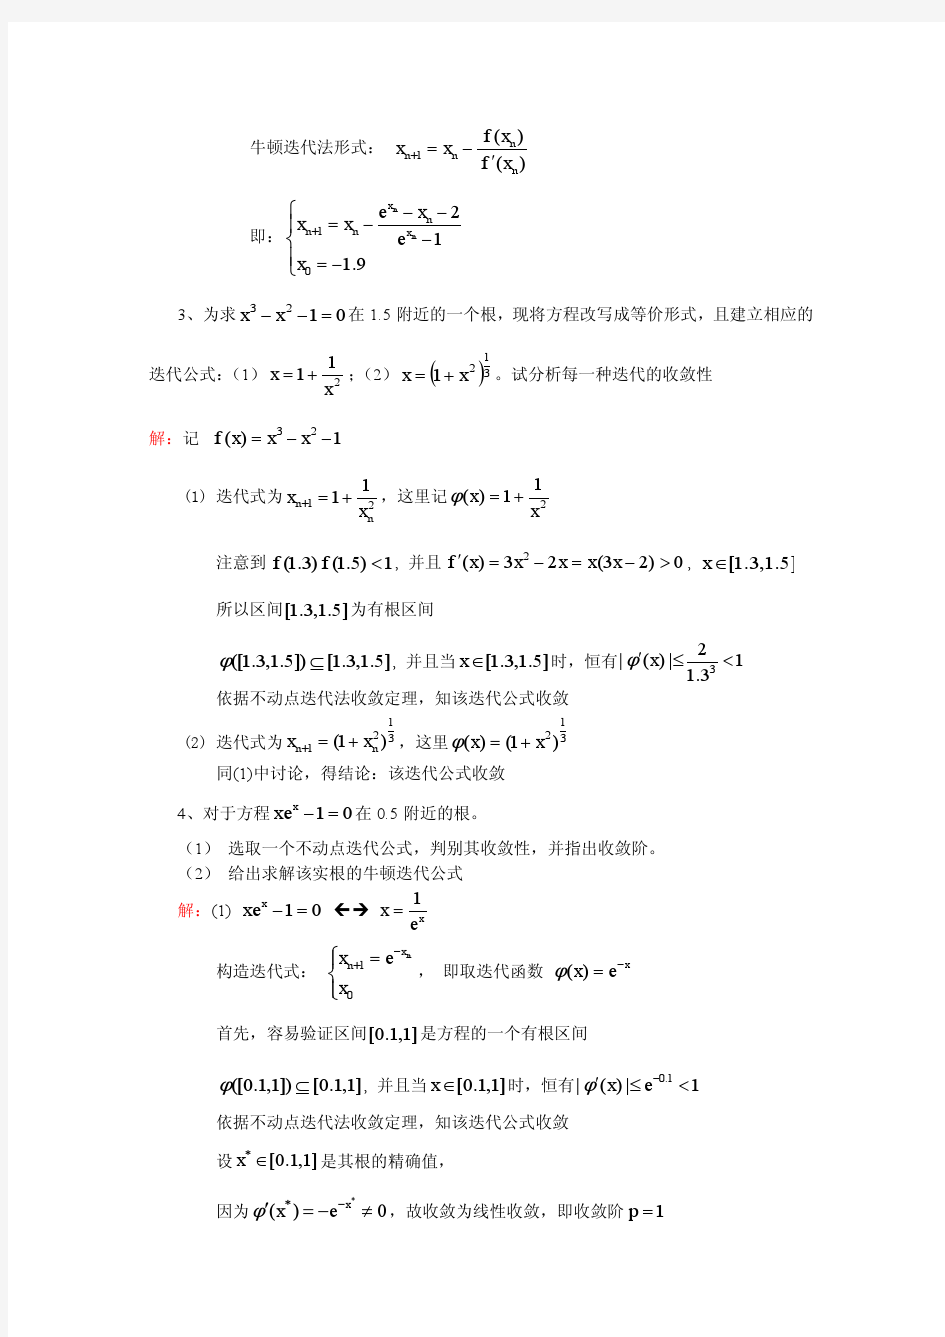 武汉大学数值分析分章复习(非线性方程求根)